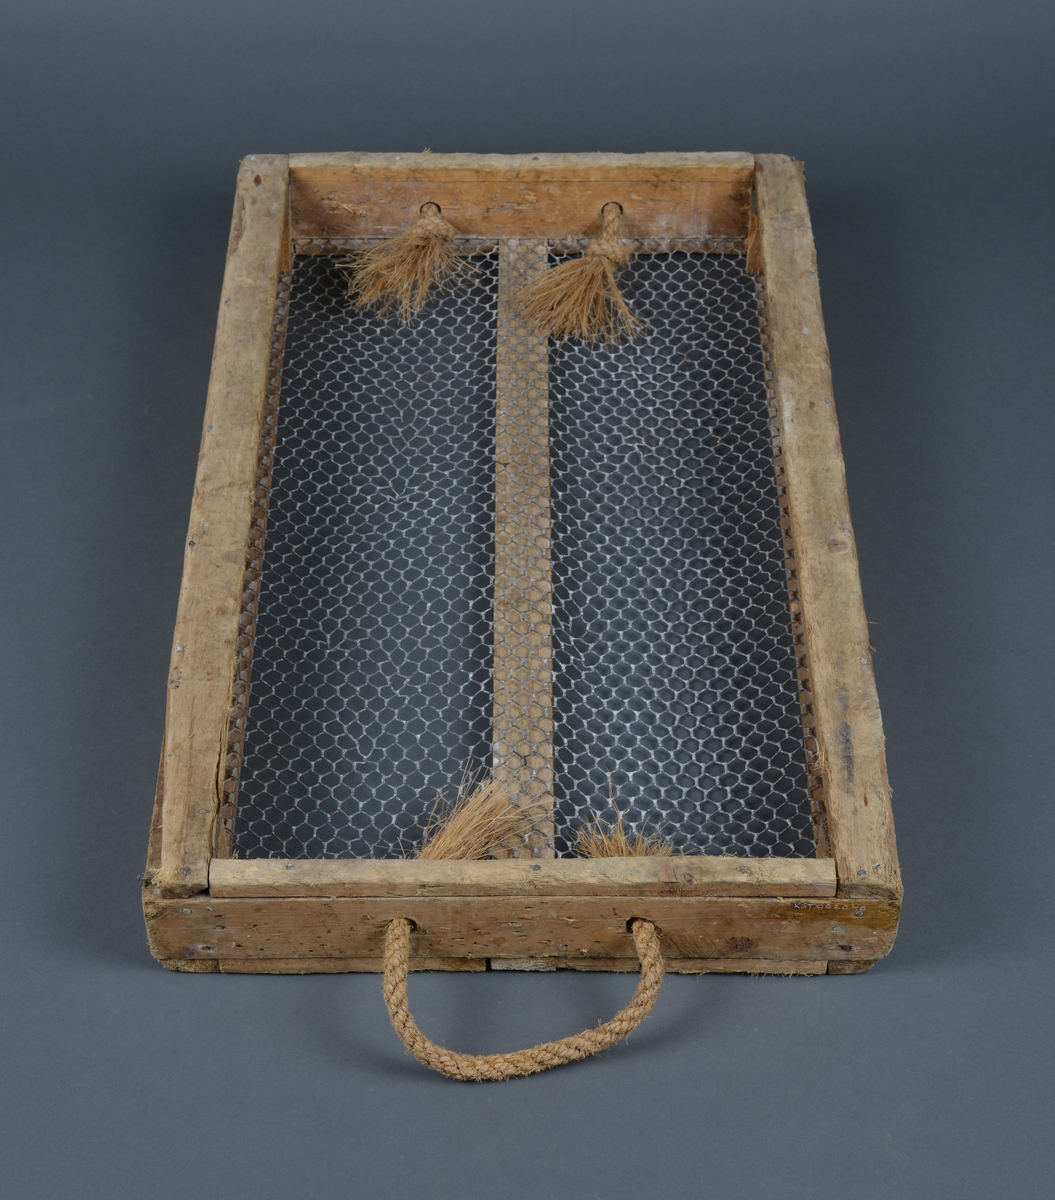 Kasse med nettingbunn. Kassen er brukt i produksjon av is til nedkjøling av sild og fisk.

Form: Rektangulær